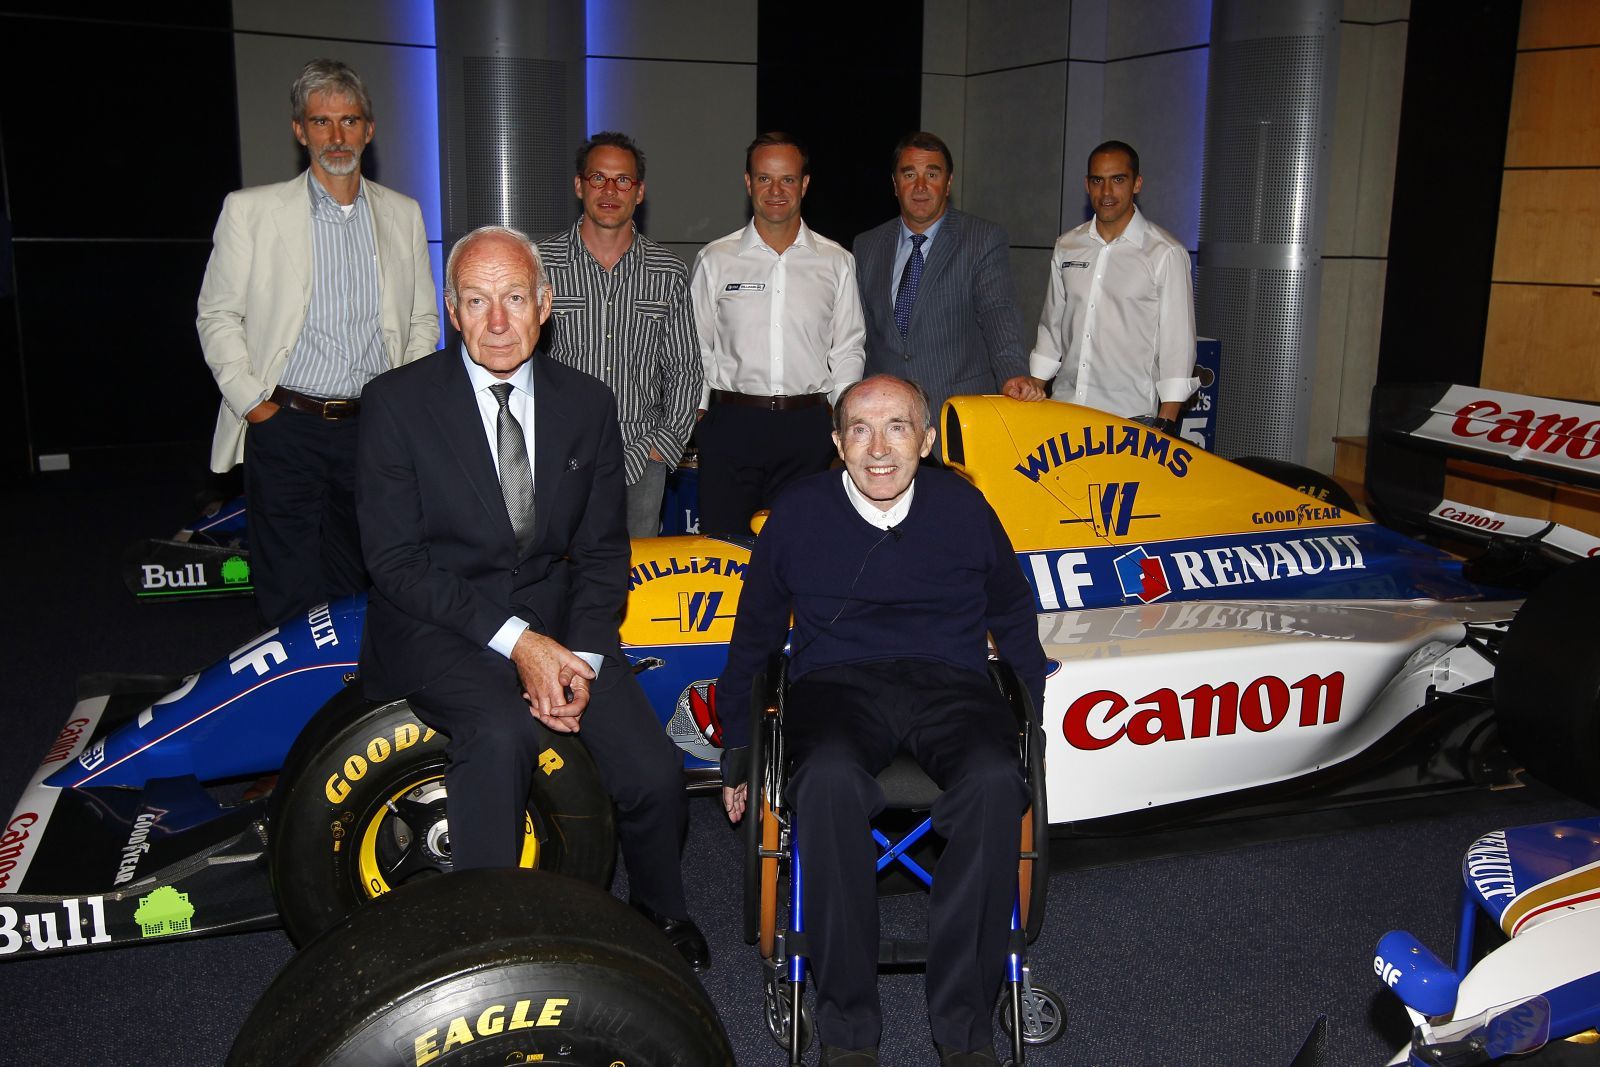 Frank Williams alături de Bernard Rey, şeful Renault Sport F1 şi de foşti şi actuali piloţii care au concurat pentru Williams Renault: Damon Hill, Jacques Villeneuve, Rubens Barrichello, Nigel Mansell şi Pastor Maldonado